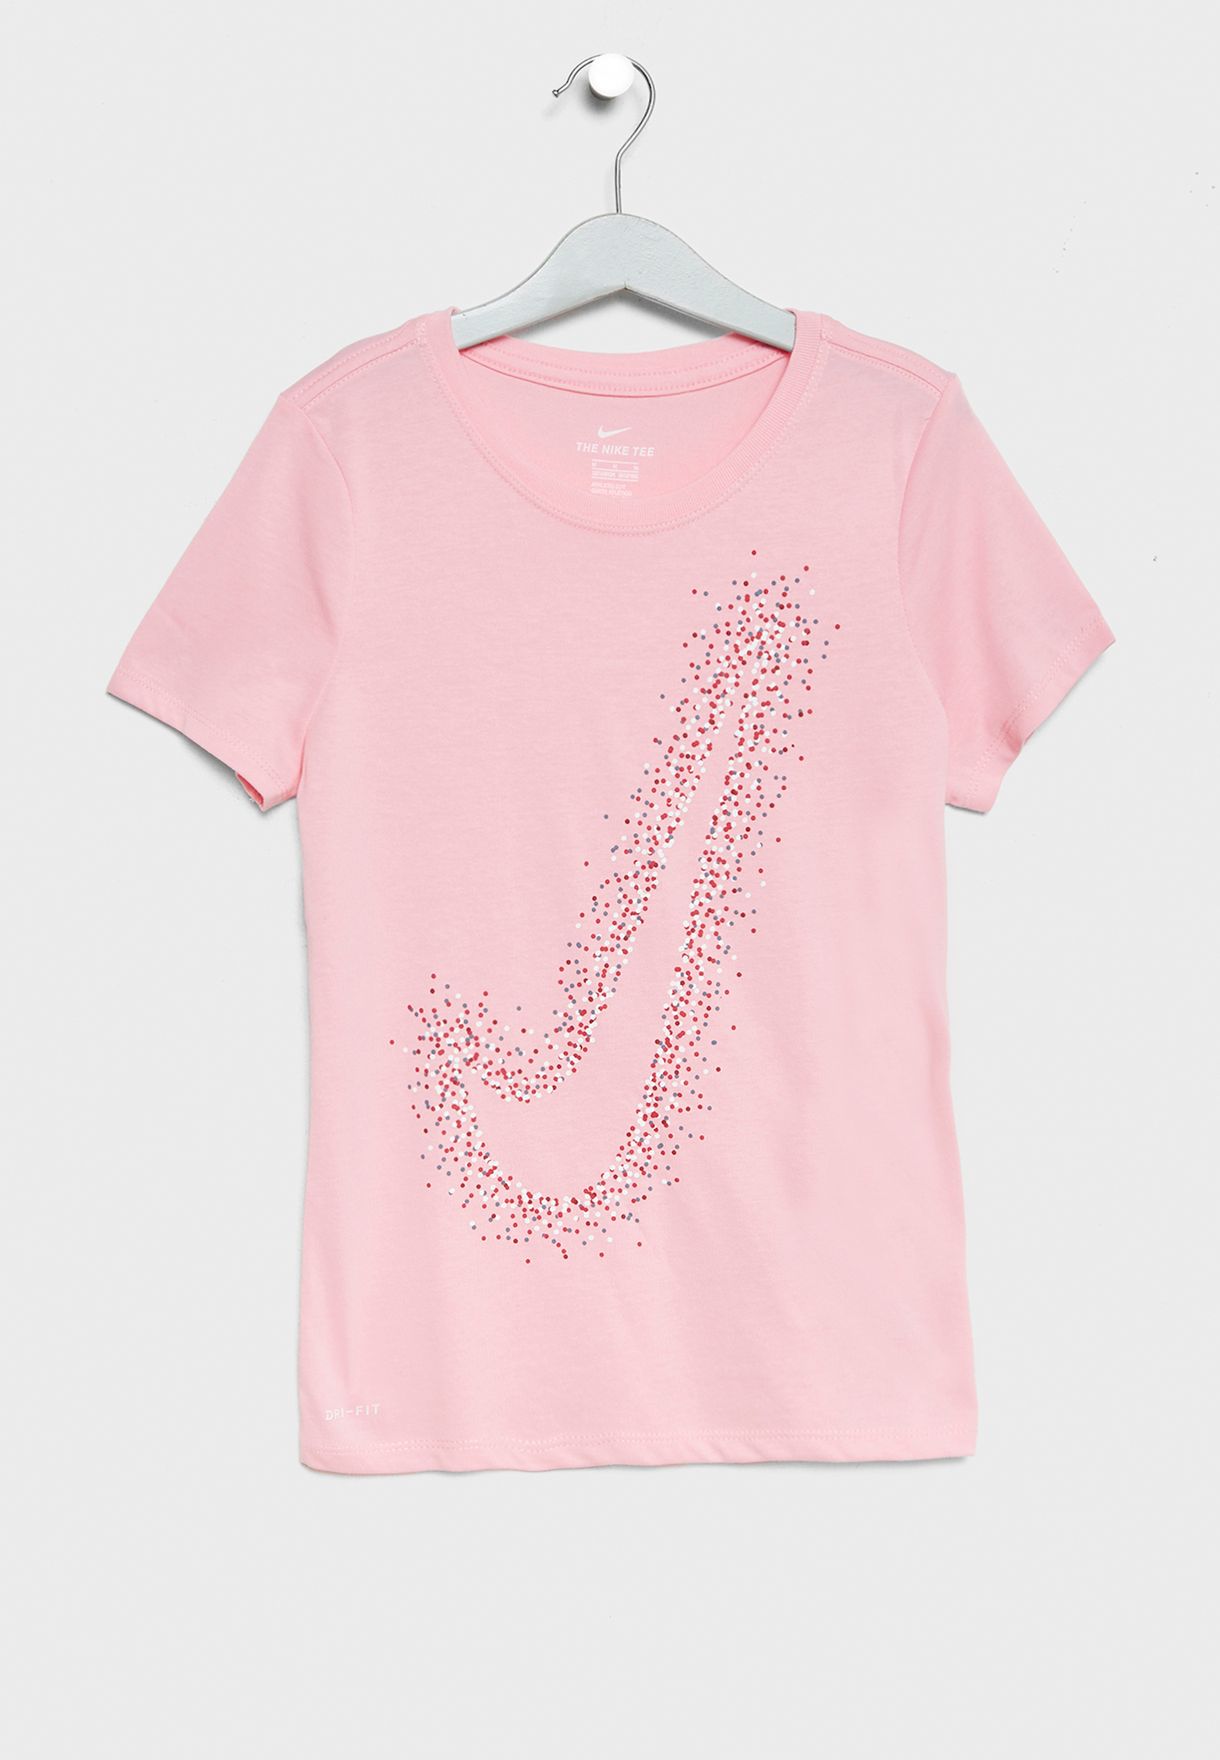 youth pink dri fit shirts